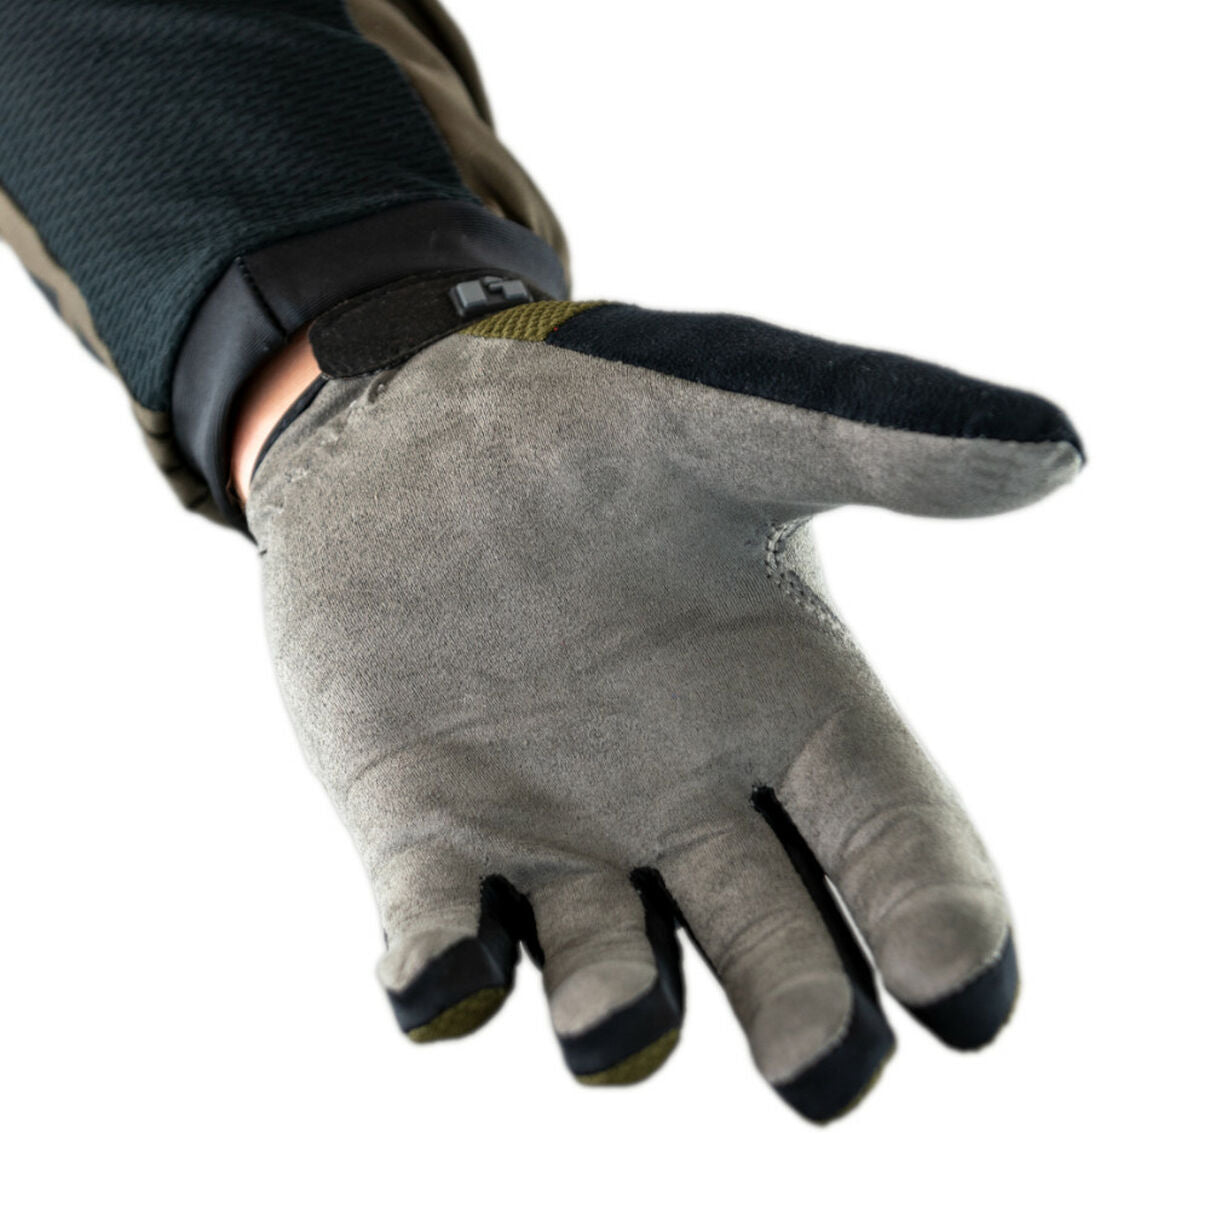 Hebo Trials Glove Nano Pro Khaki